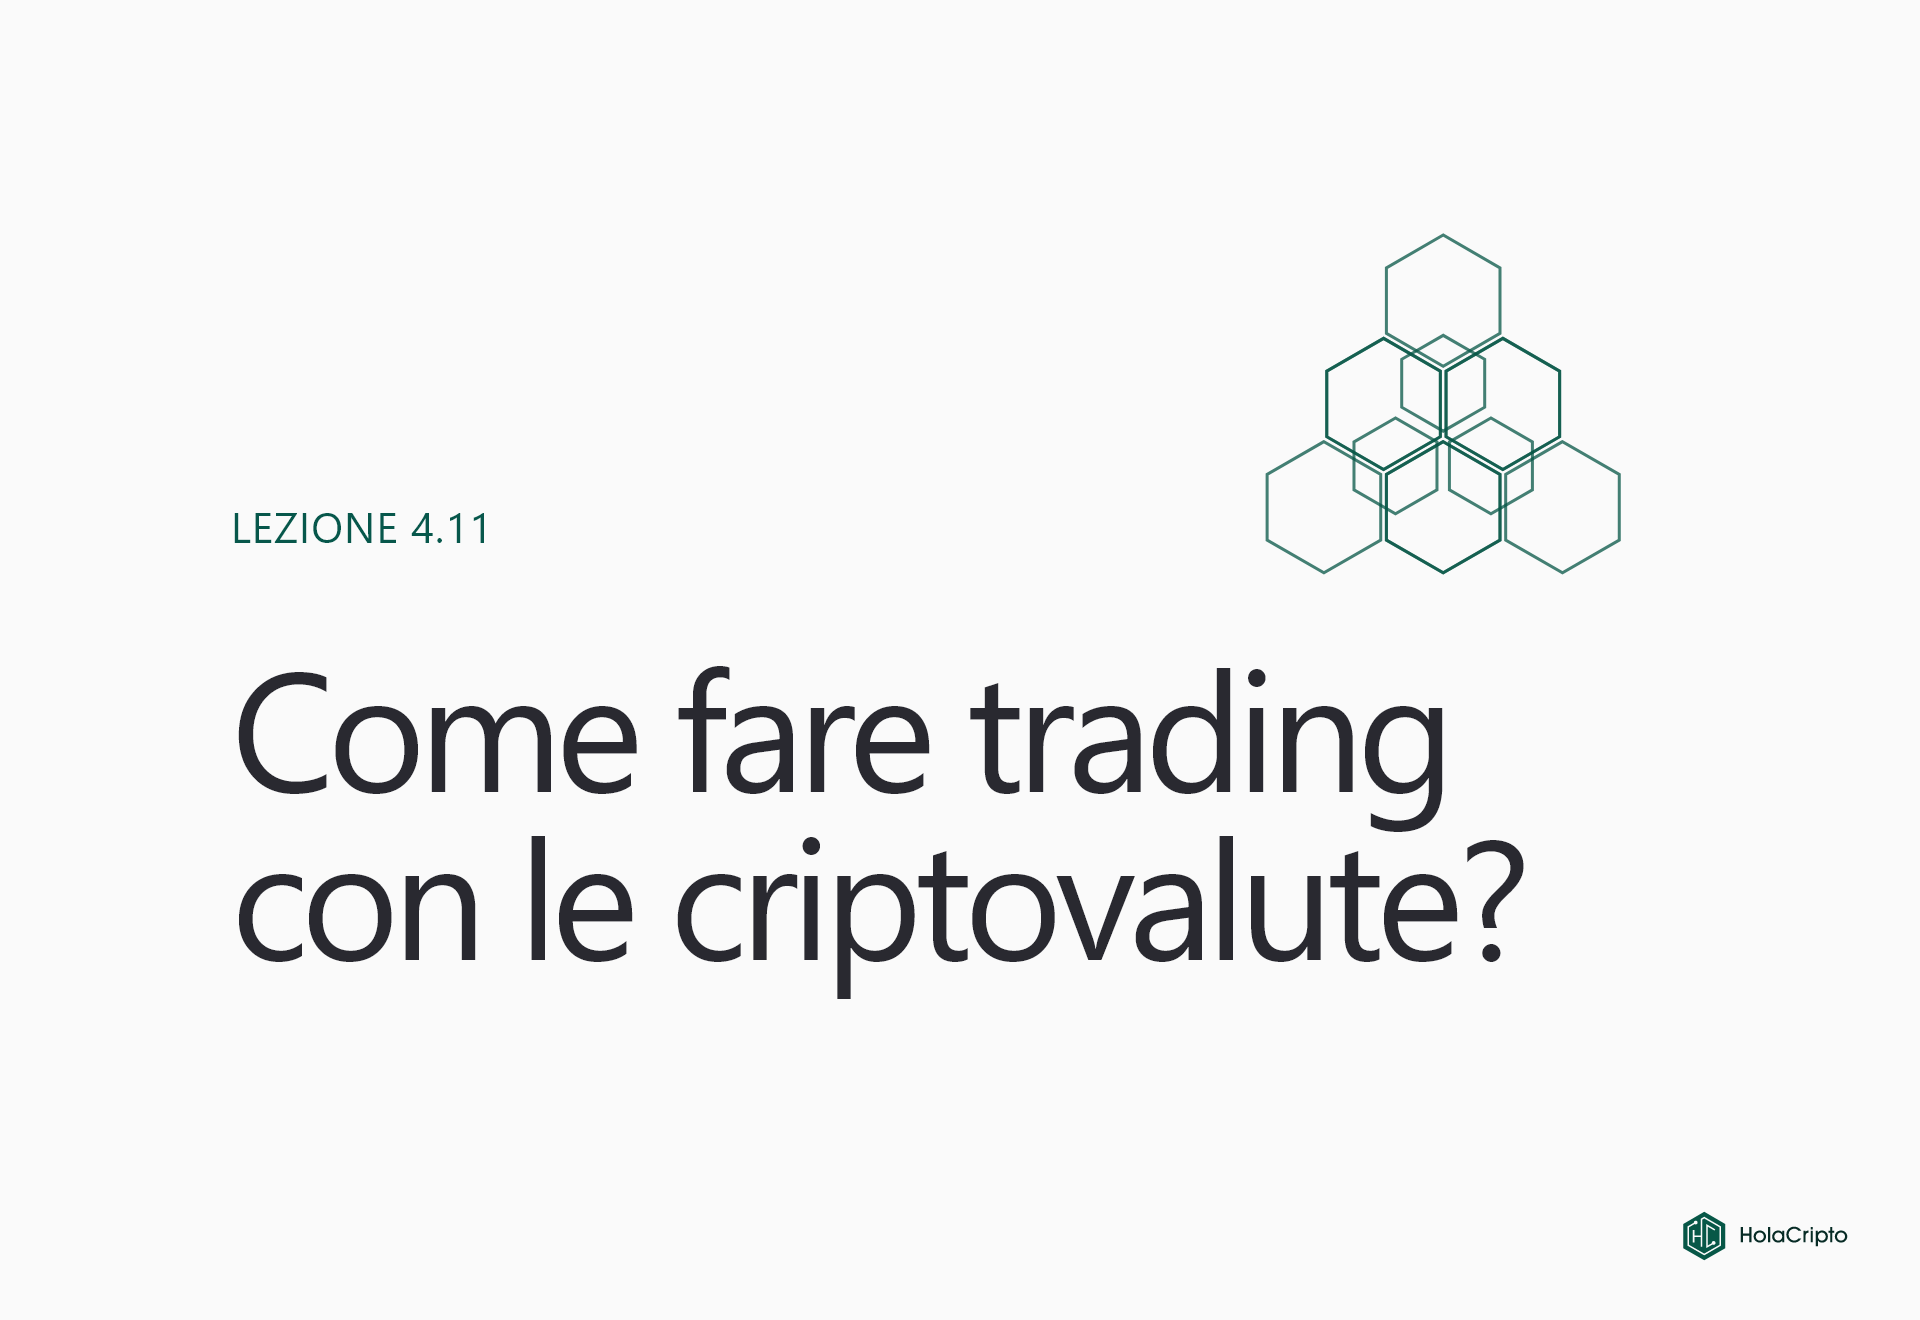 Come fare trading sulle criptovalute?